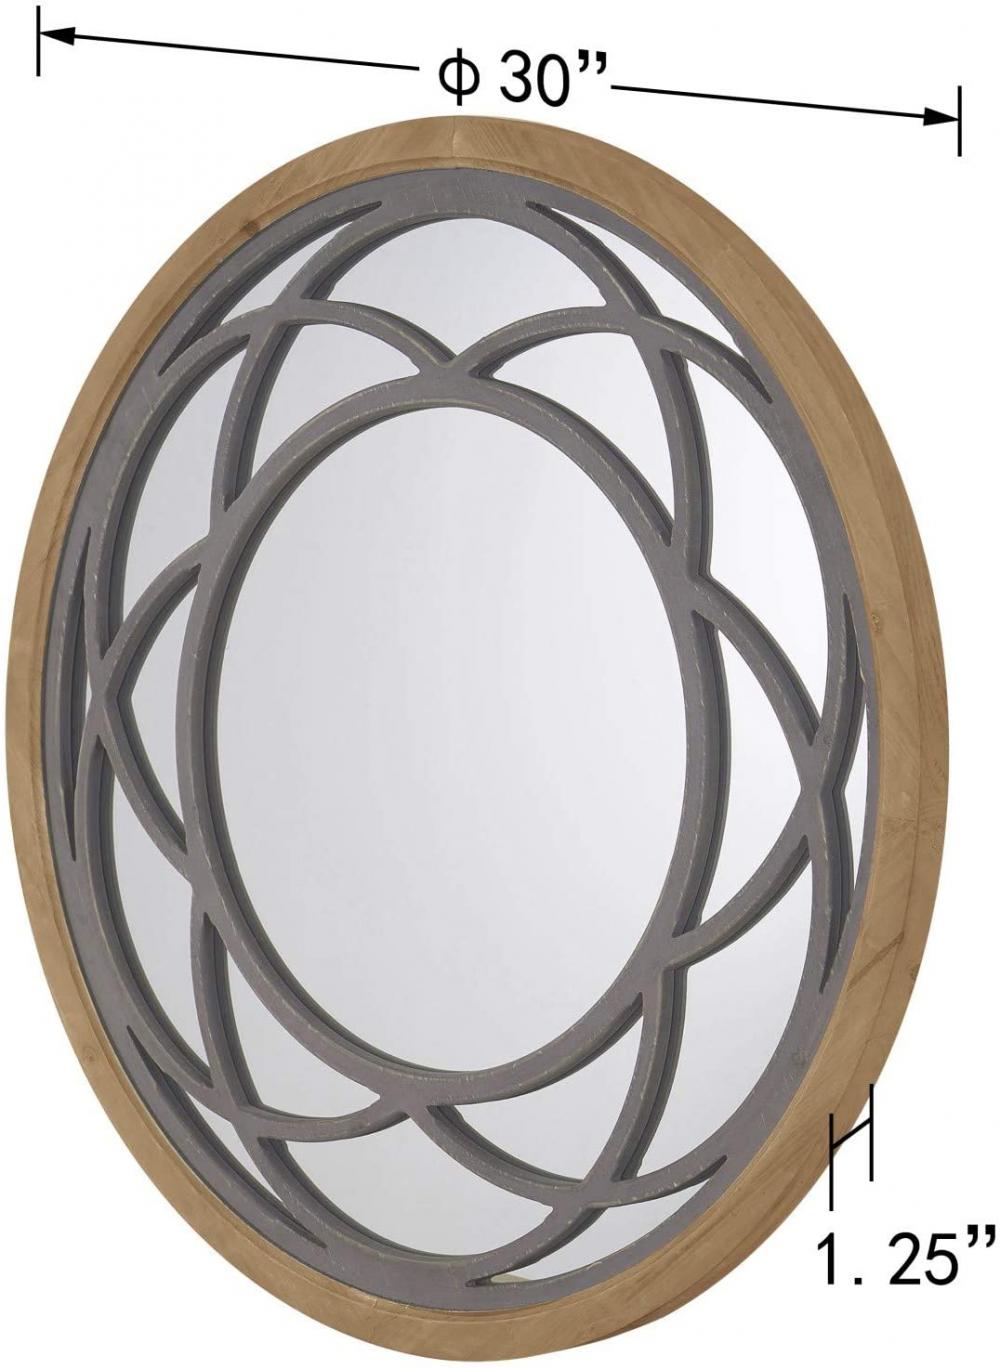 素朴な丸い装飾的な大きな壁鏡